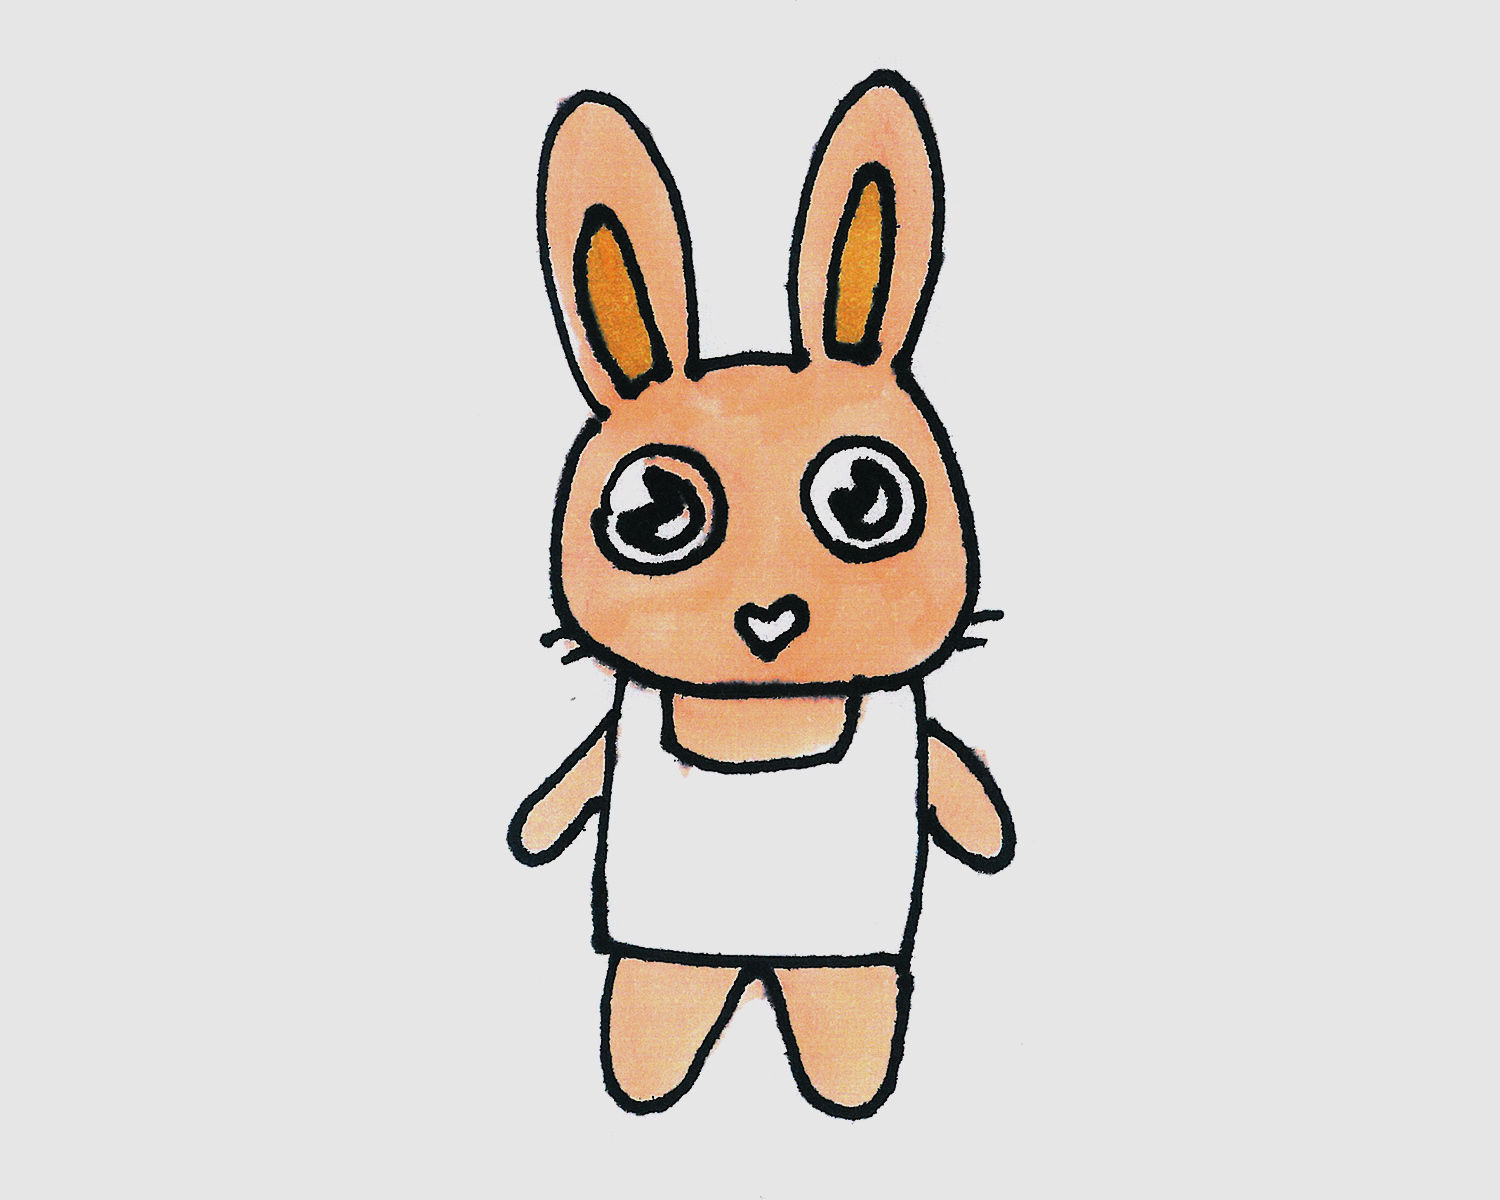 美甲兔子图案简单,美甲小兔子图片 - 伤感说说吧